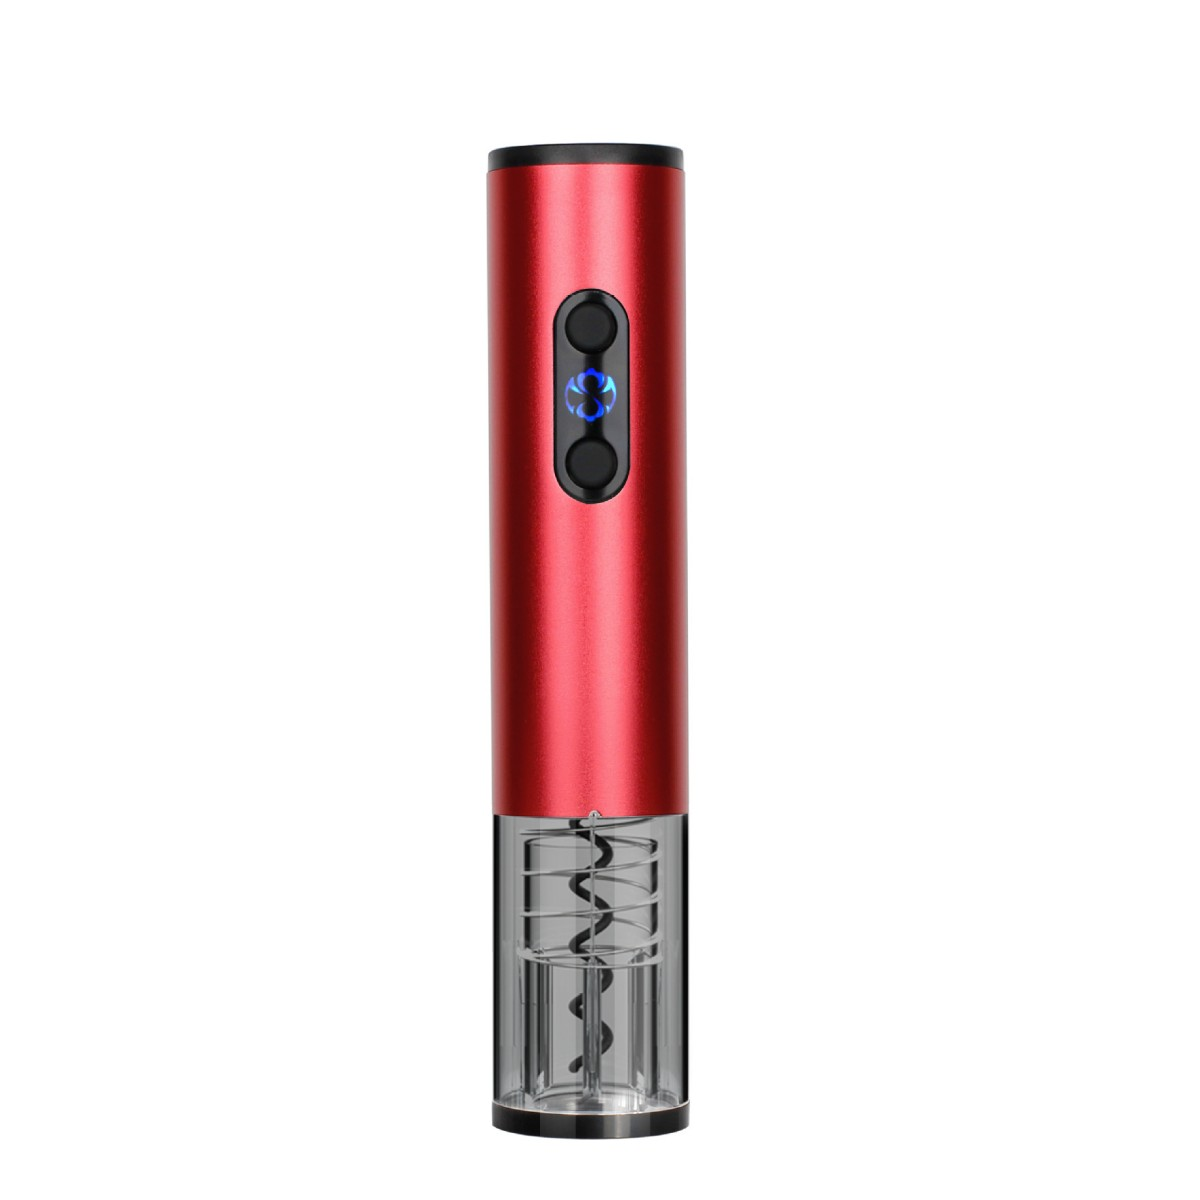 SYNTEK Flaschenöffner Wiederaufladbarer USB Korkenzieher Rot (Rot) Elektrischer Weinflaschenöffner